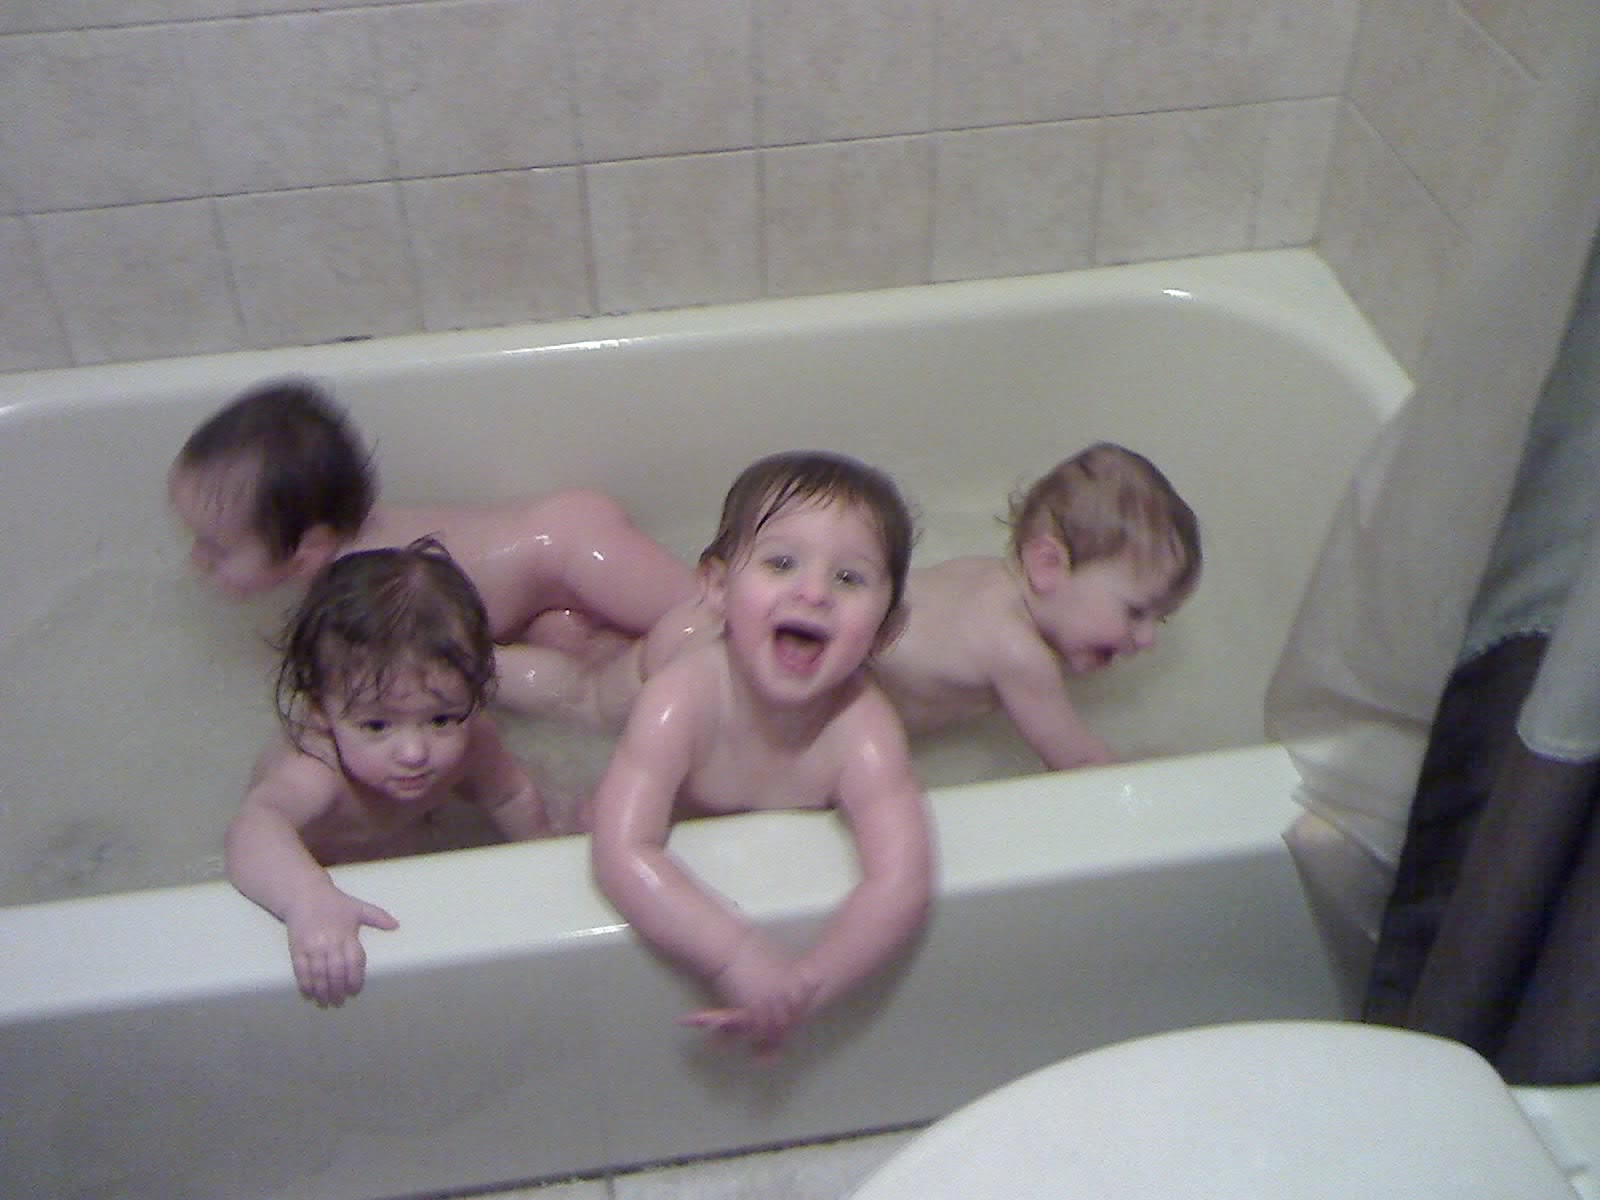 [babies+in+the+tub.jpg]